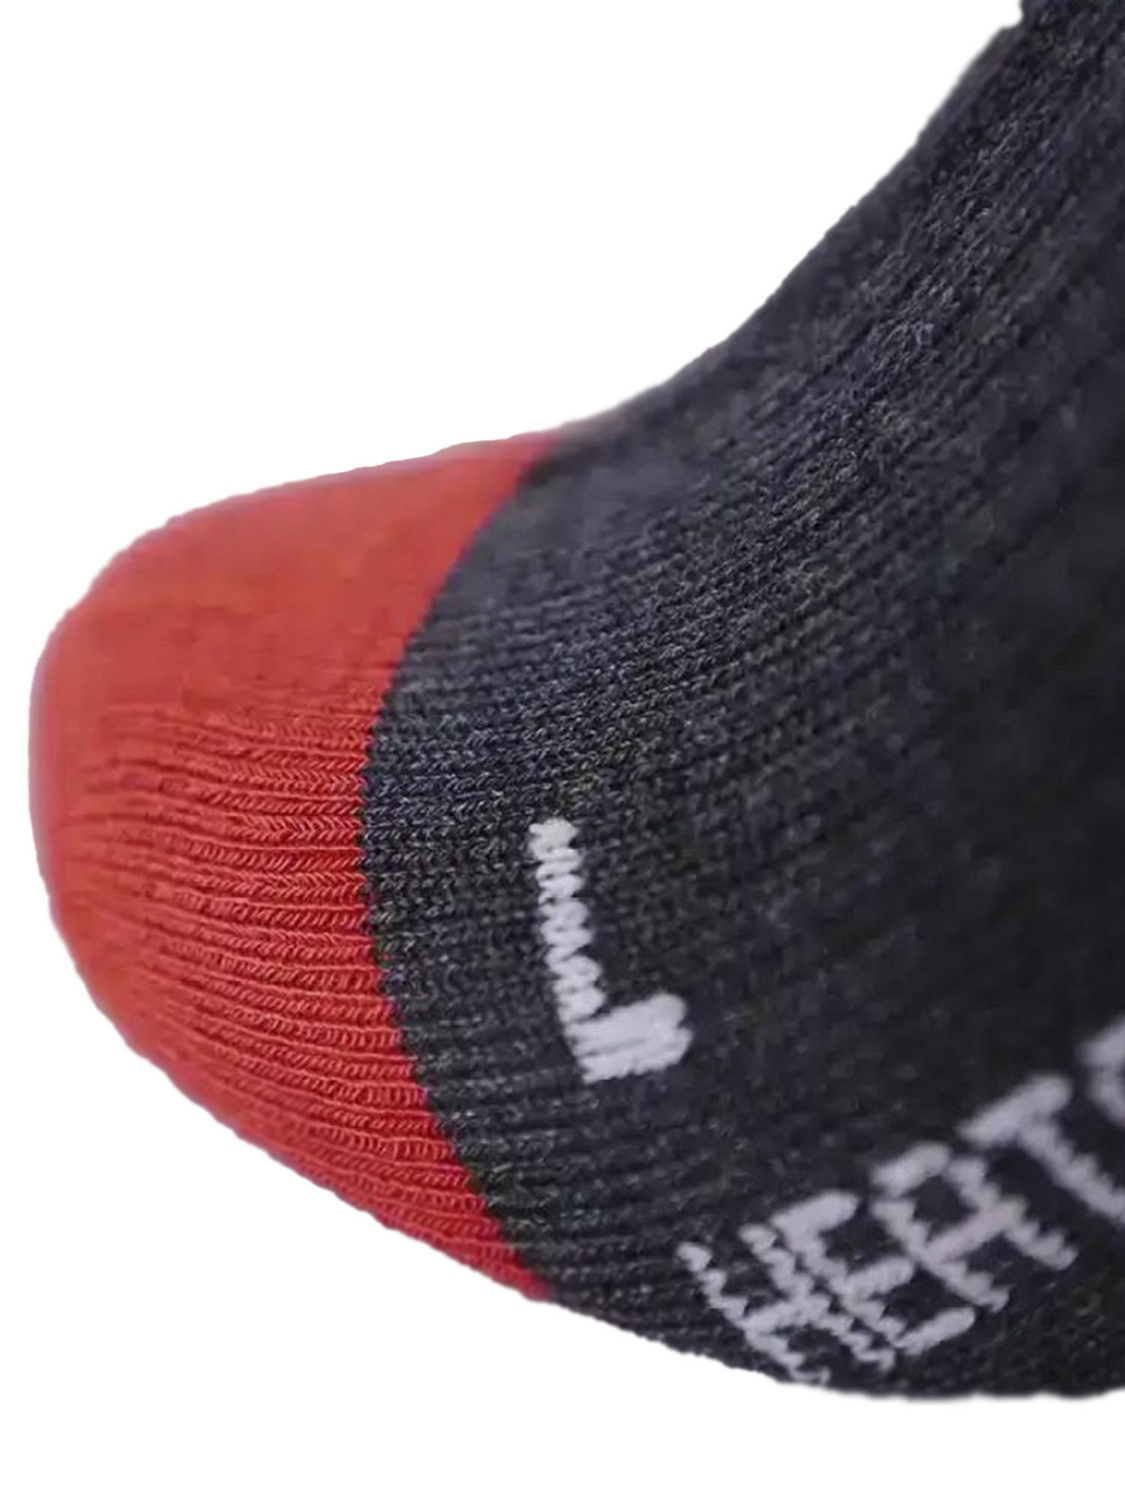 Носки с обогревательным элементом LENZ Heat Sock 5.1 Toe Cap Regular Fit Anthracite/Red